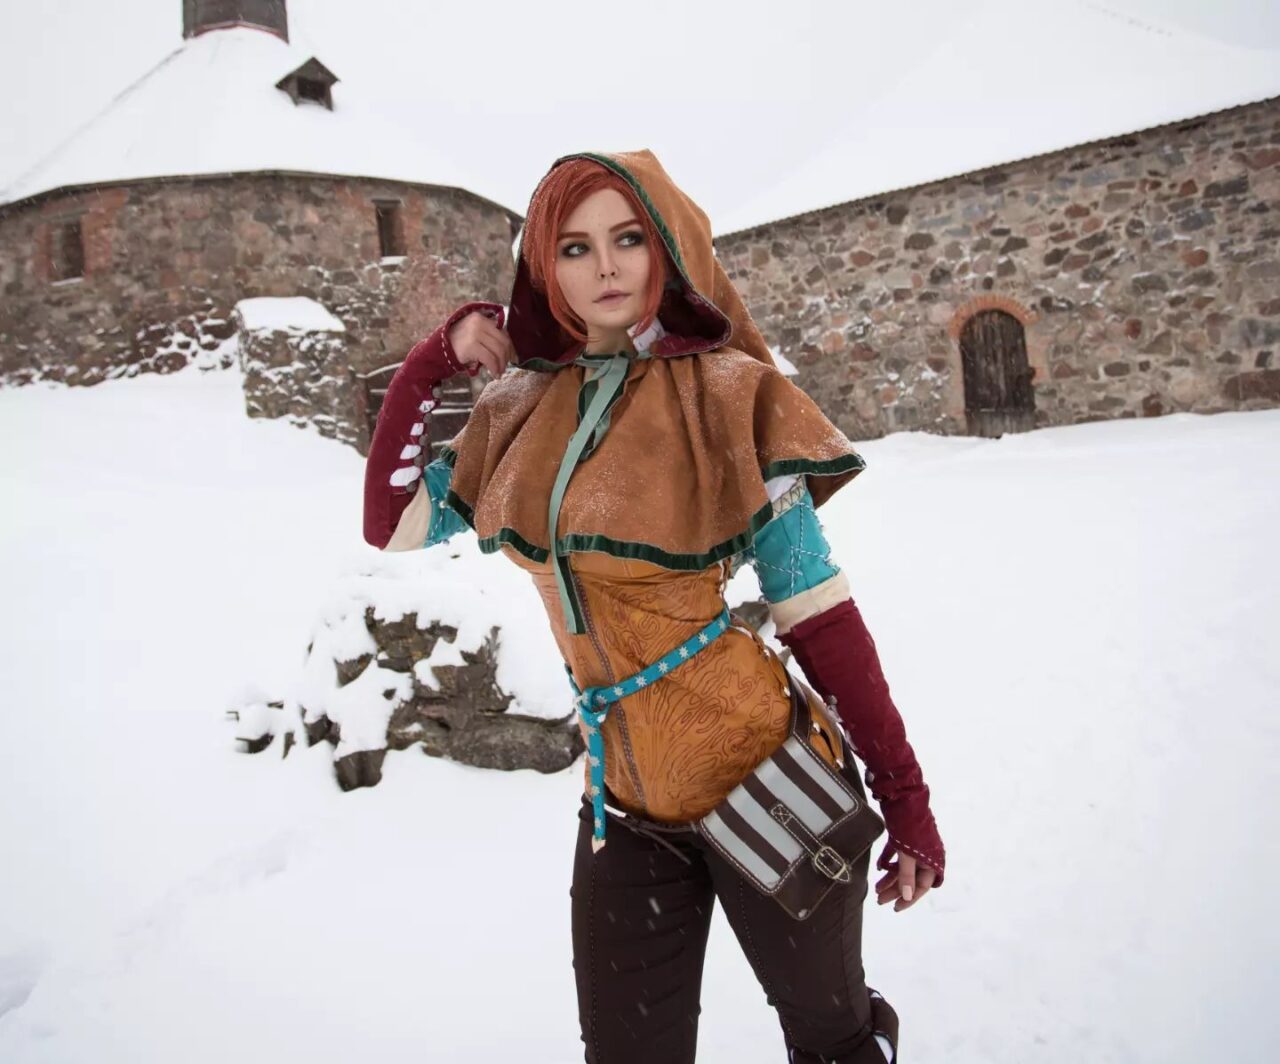 Cosplayer russa encanta com incrível cosplay da encantadora Triss Merigold de The Witcher